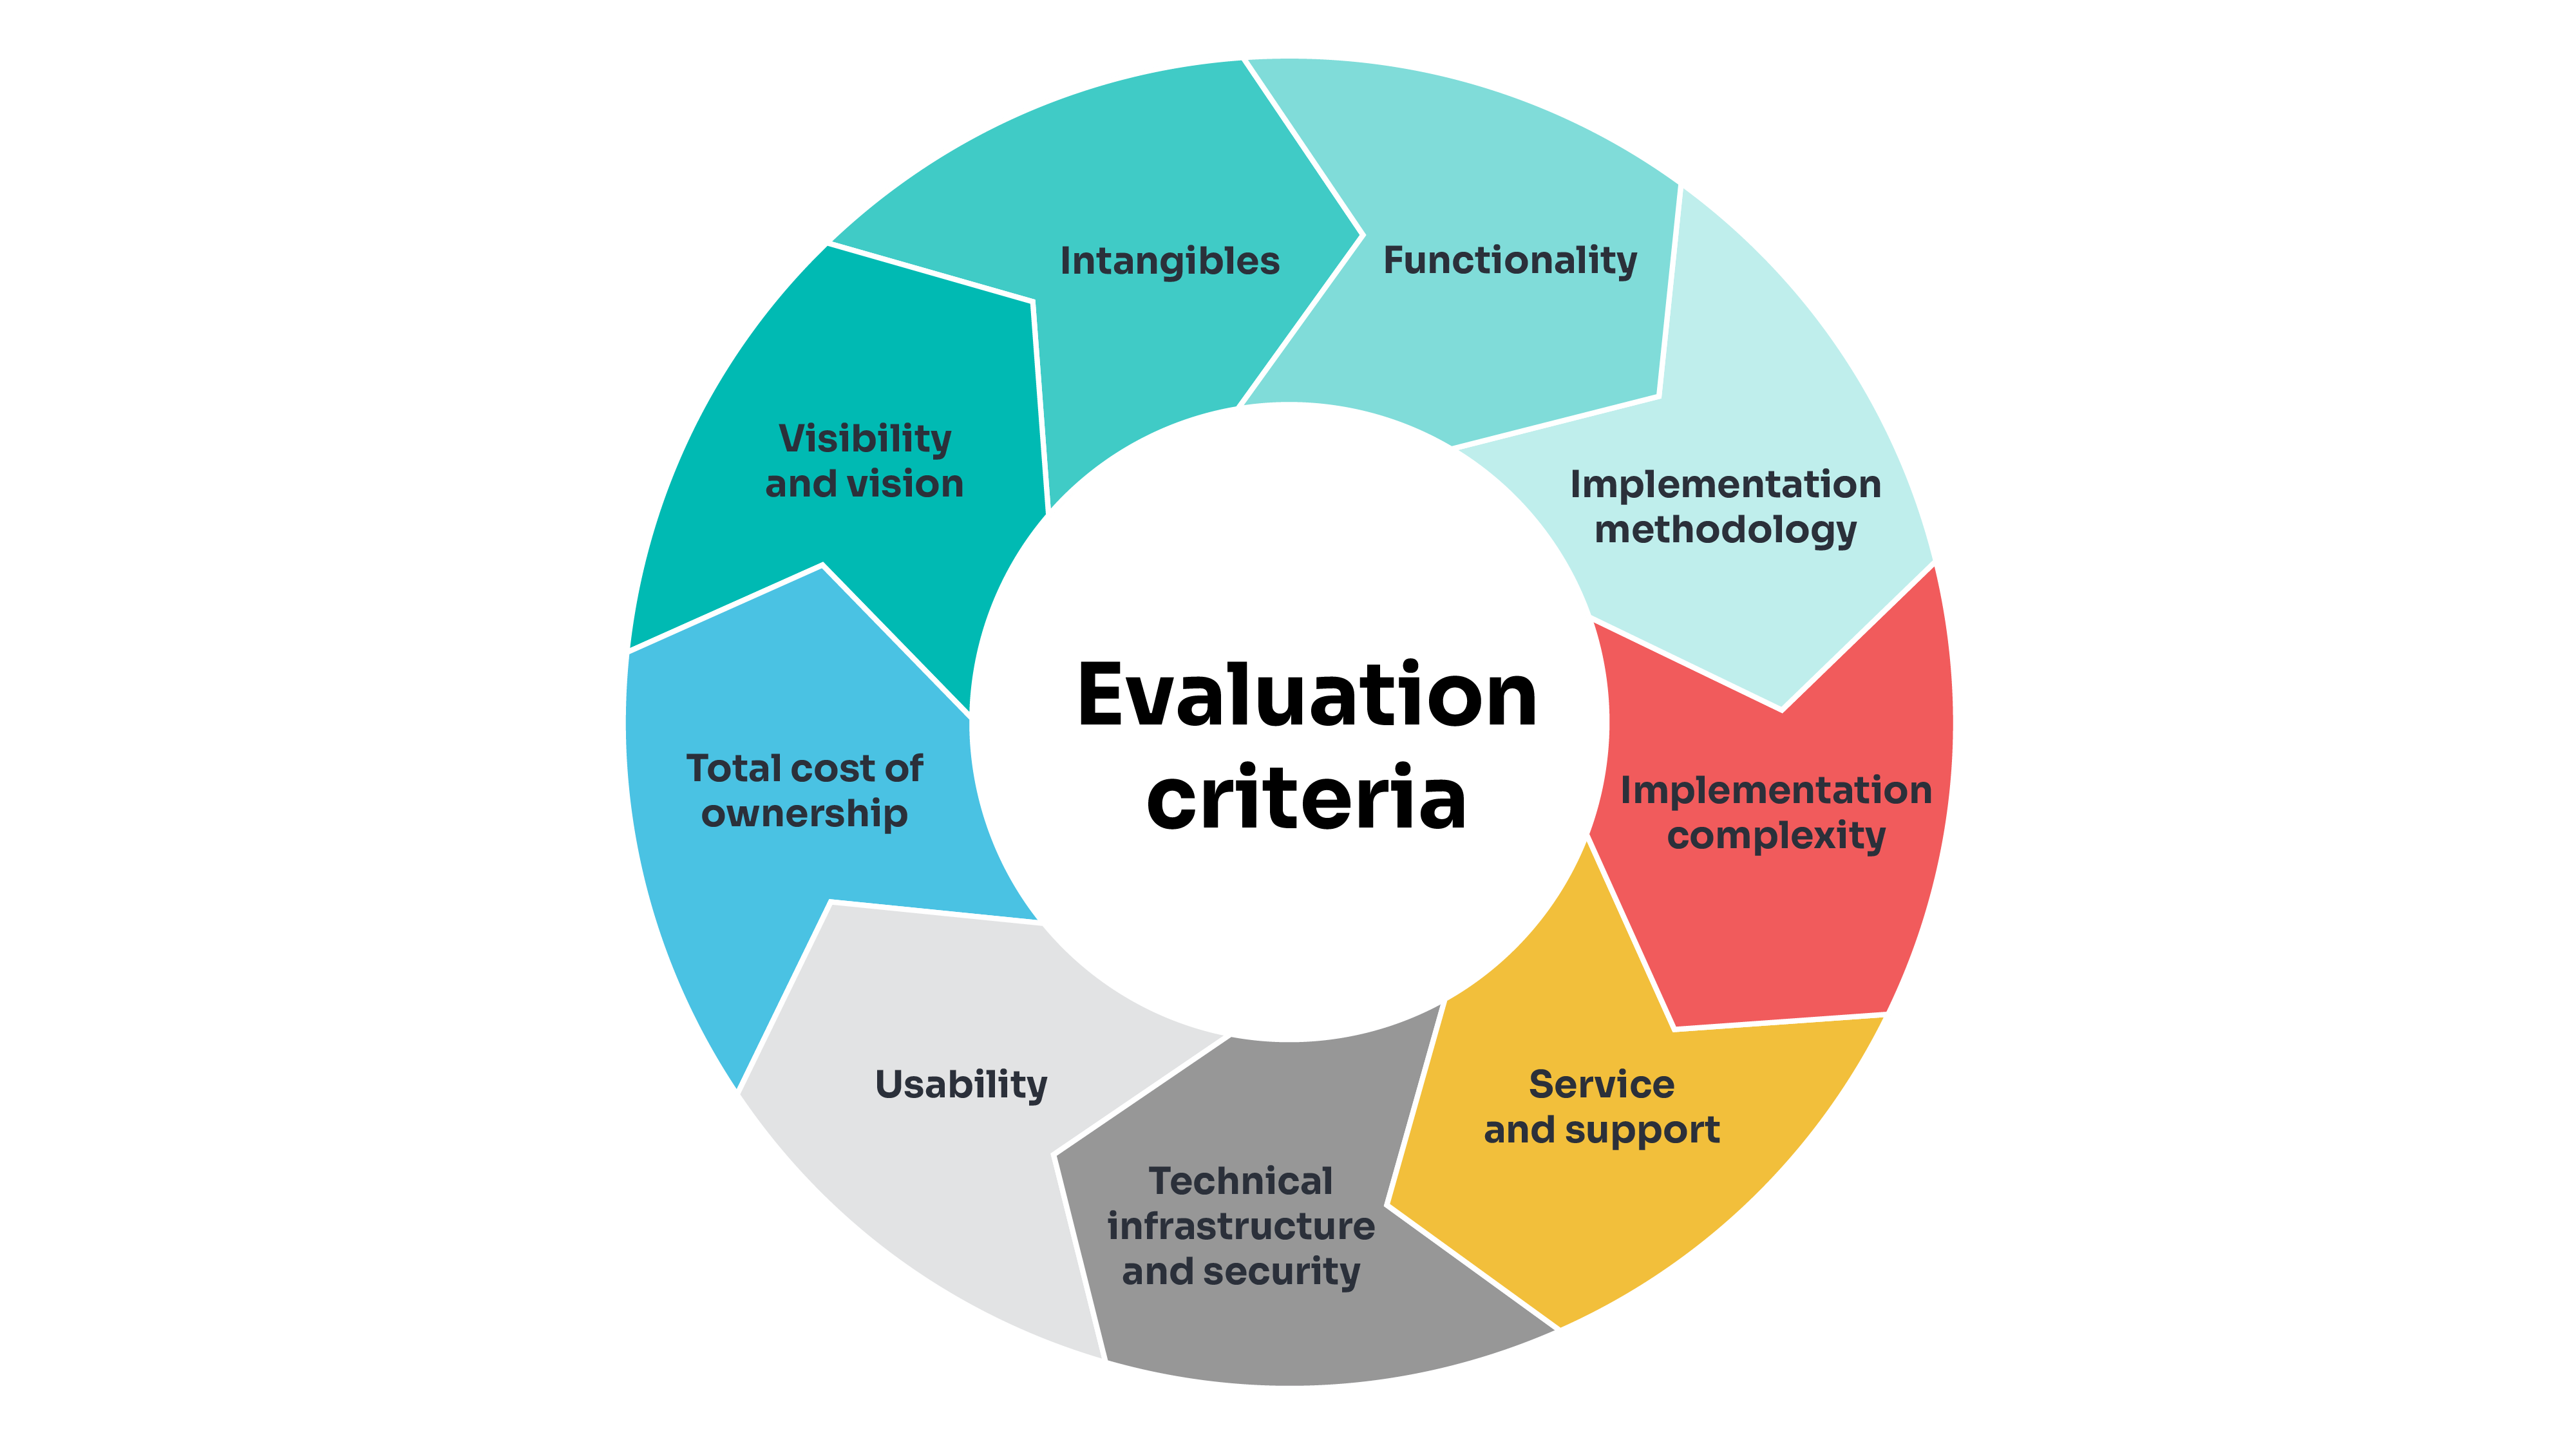 Assessment evaluation criteria